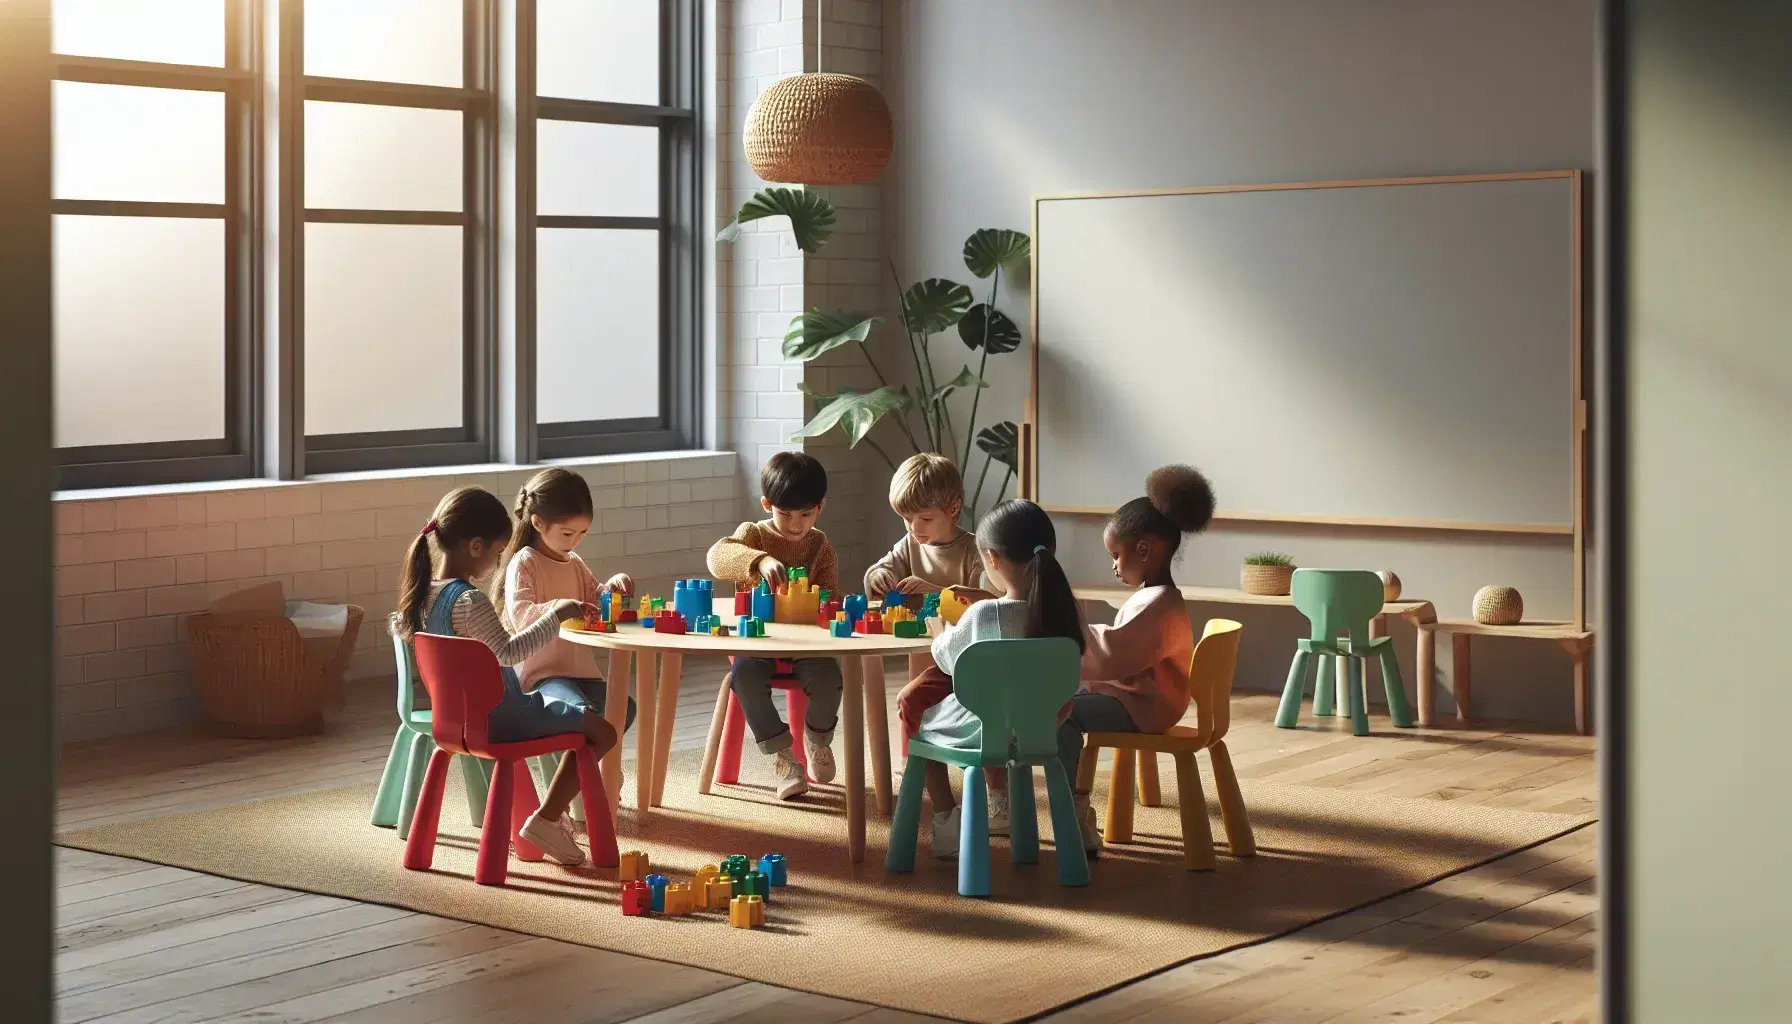 Niños de diversas etnias colaborando en la construcción de estructuras con bloques de colores en una aula iluminada con luz natural.